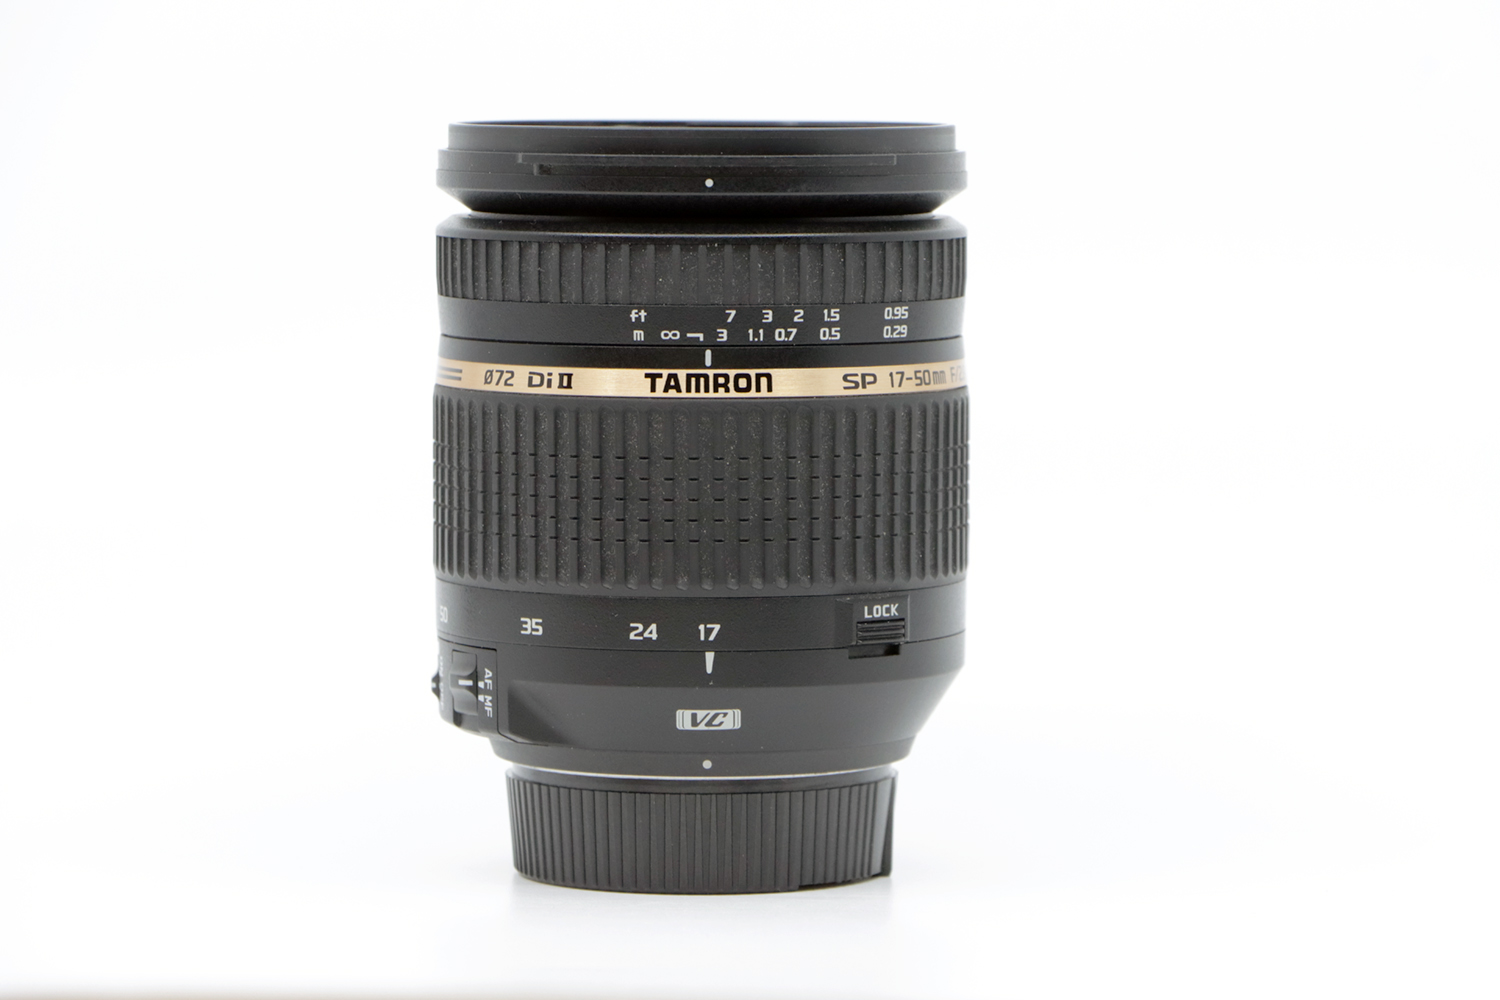 TAMRON DI II 17-50mm F2.8 pour Nikon | IMG_3890.JPG